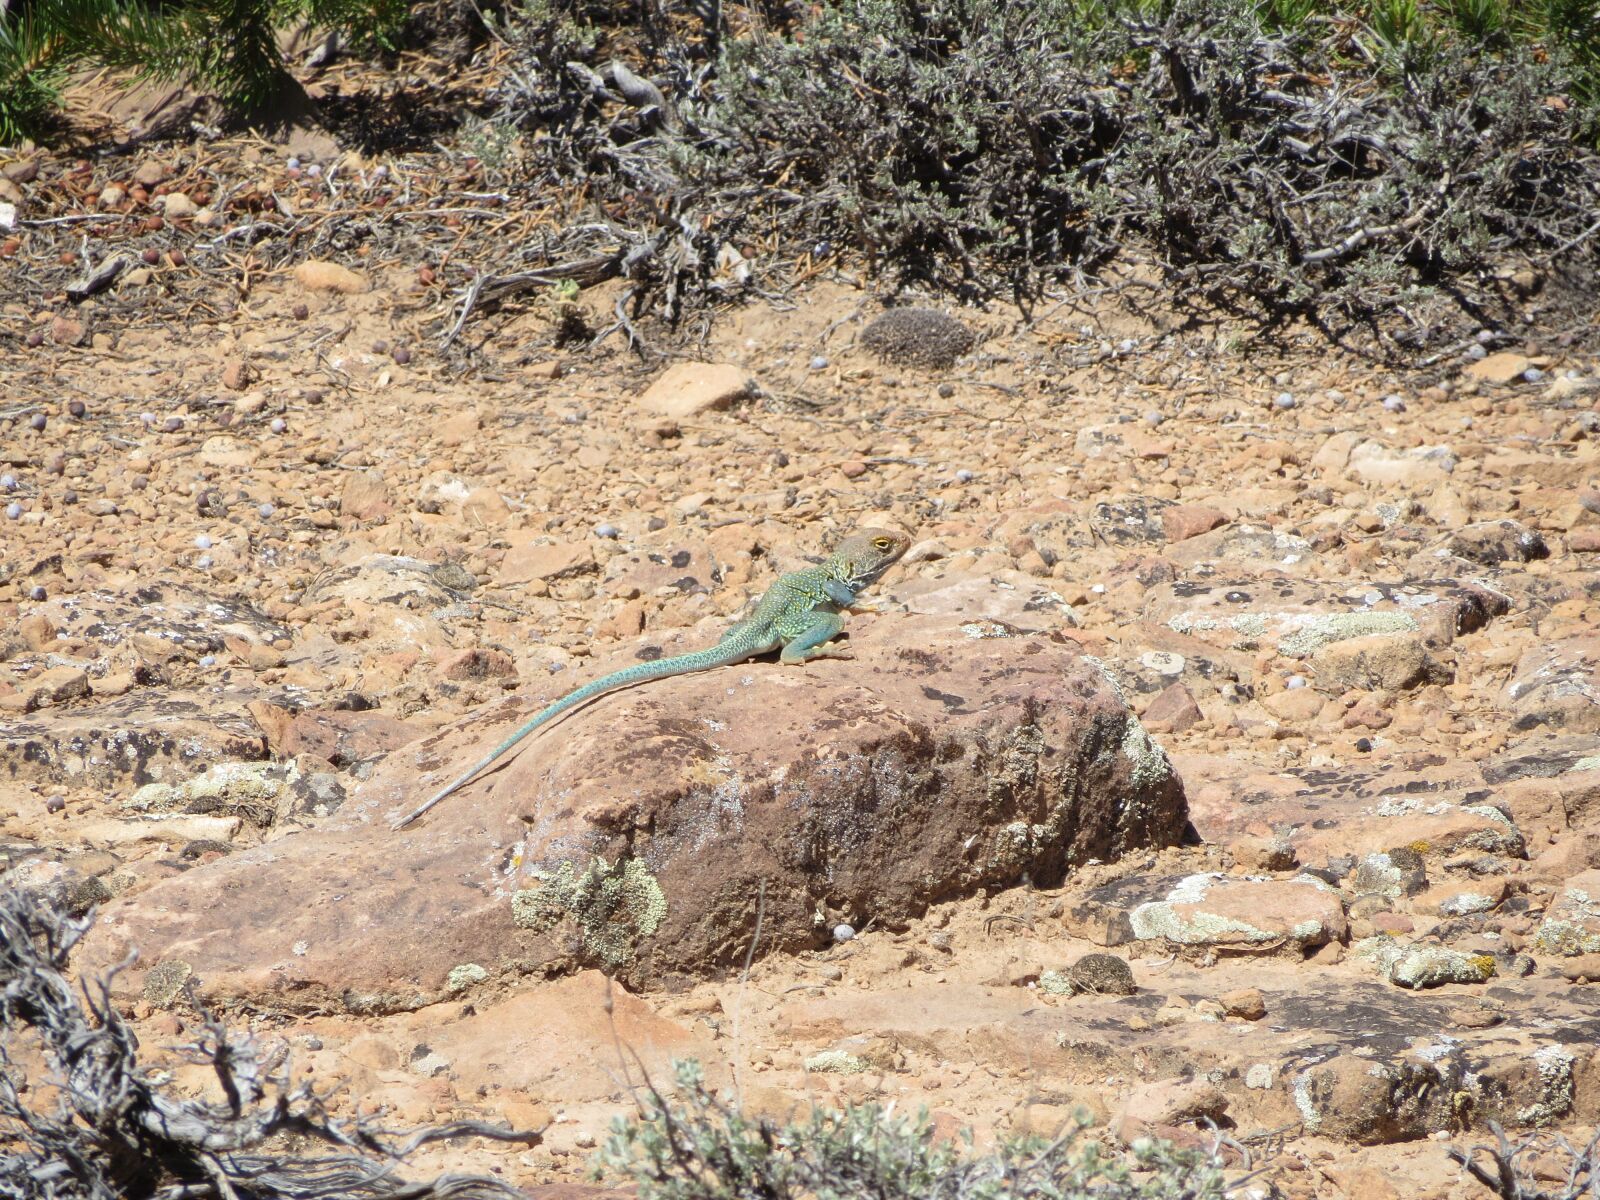 Canon PowerShot SX280 HS sample photo. Colorado, lizard, desert photography